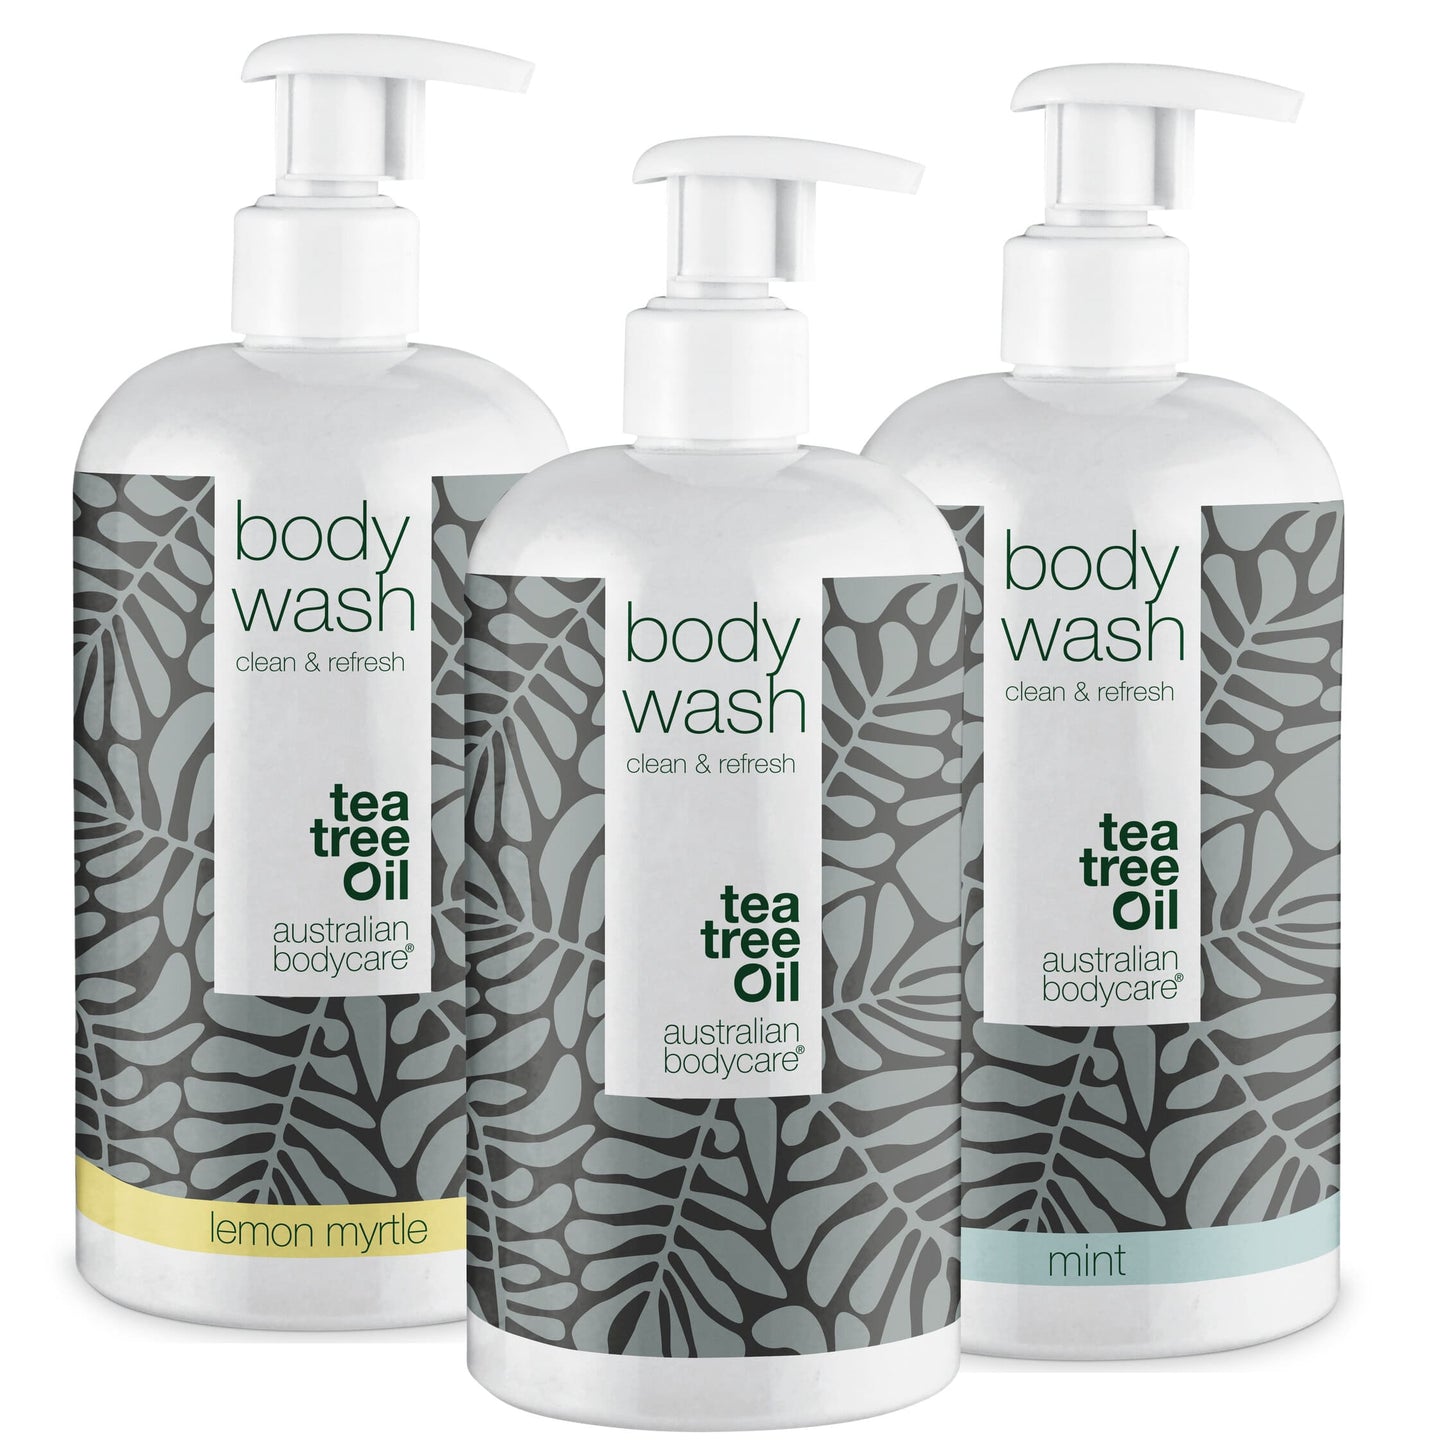 3 Body Wash -tarjouspaketti - Pakettitarjous, jossa on 3 x vartalopesua (500 ml): teepuuöljy, sitruunamyrtti ja minttu